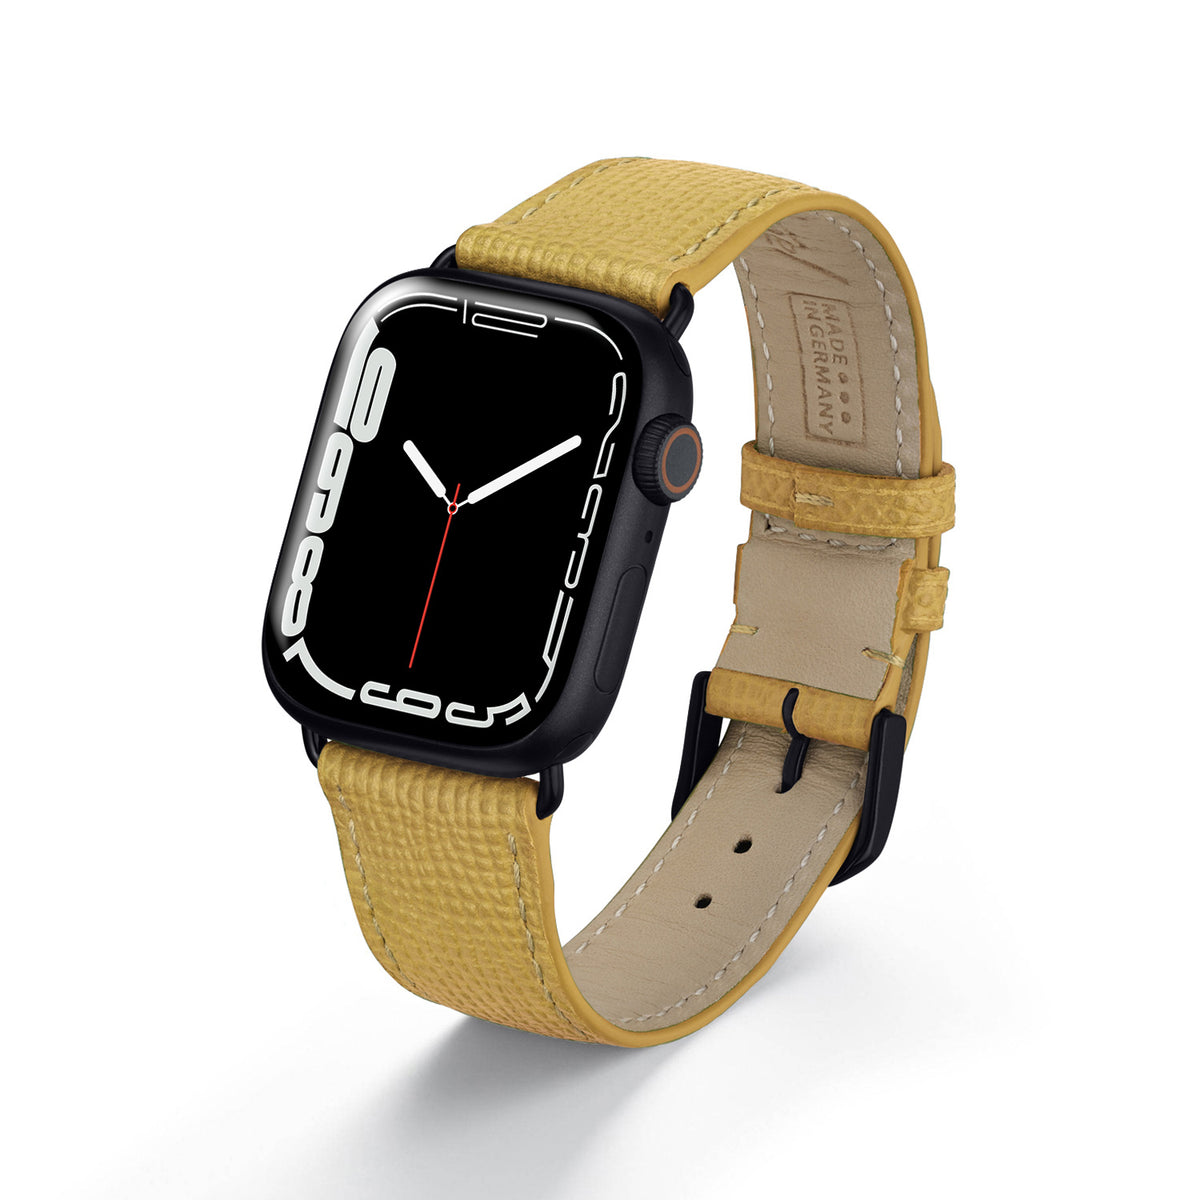 Apple Watch Uhrenarmband AvelloStrap von Happel, Rindsleder, handgefertigt, Sand (Farbe)